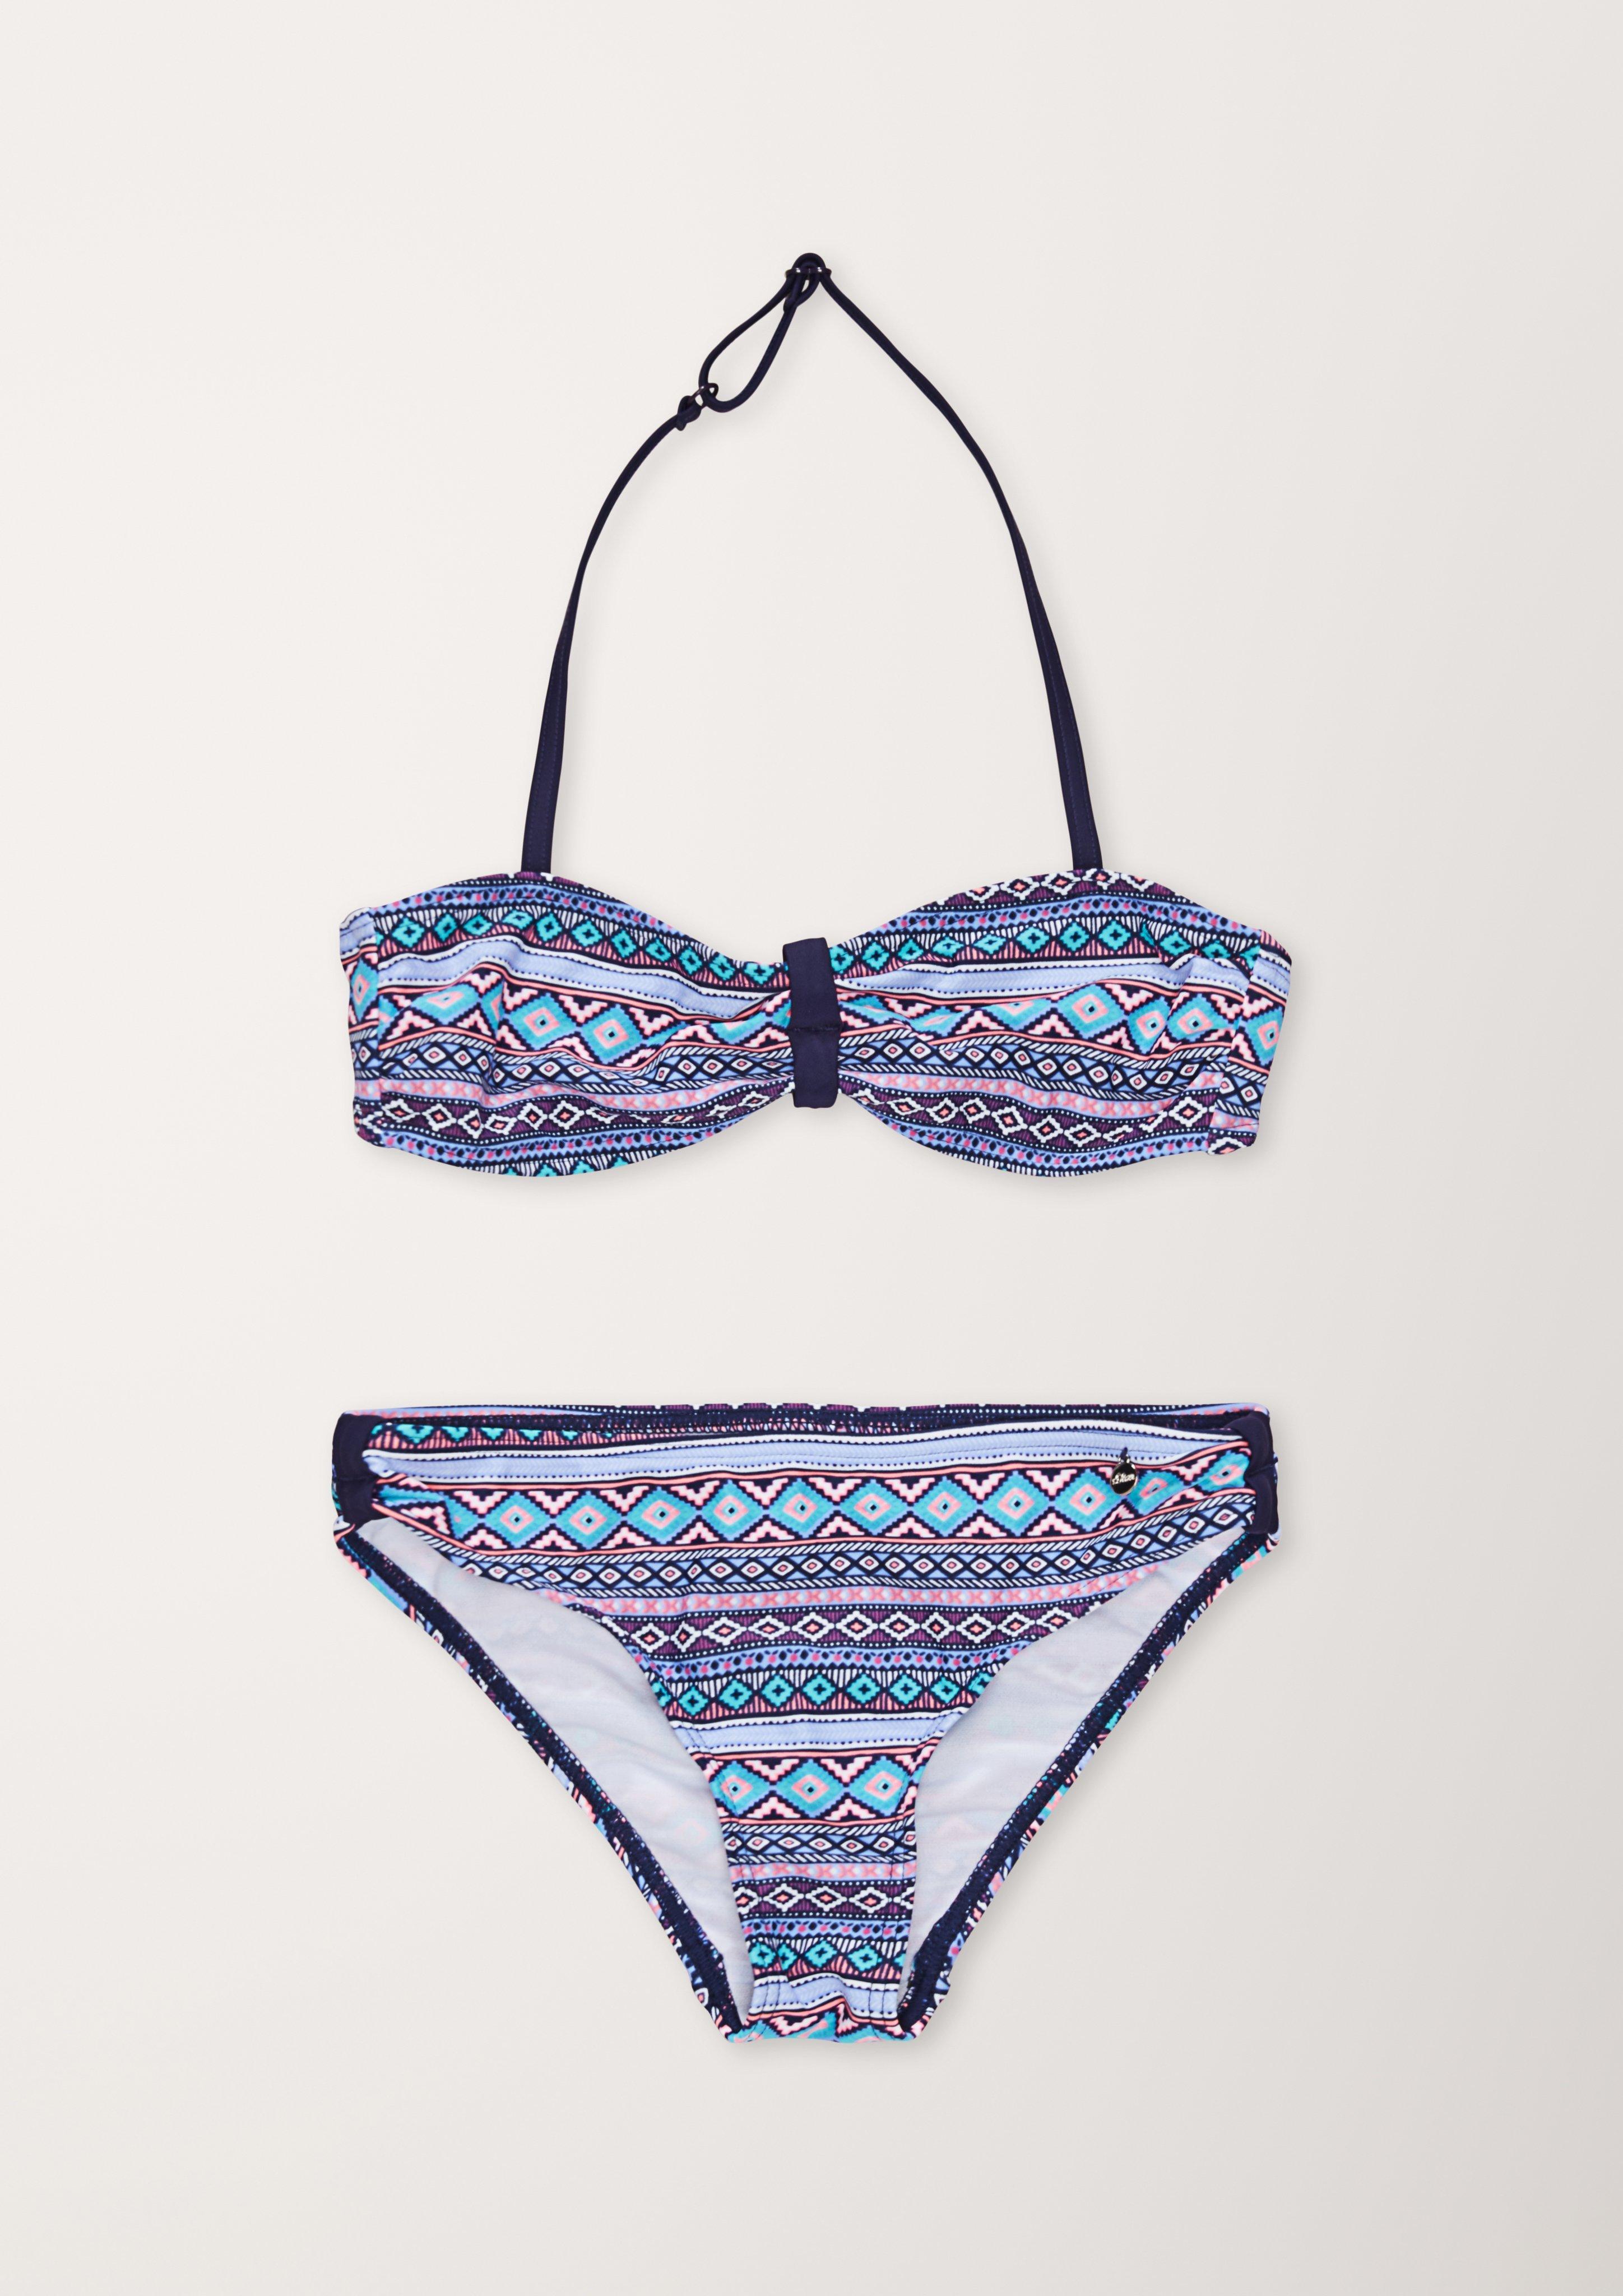 Bandeau-Bikini - ozeanblau Ethno-Muster mit